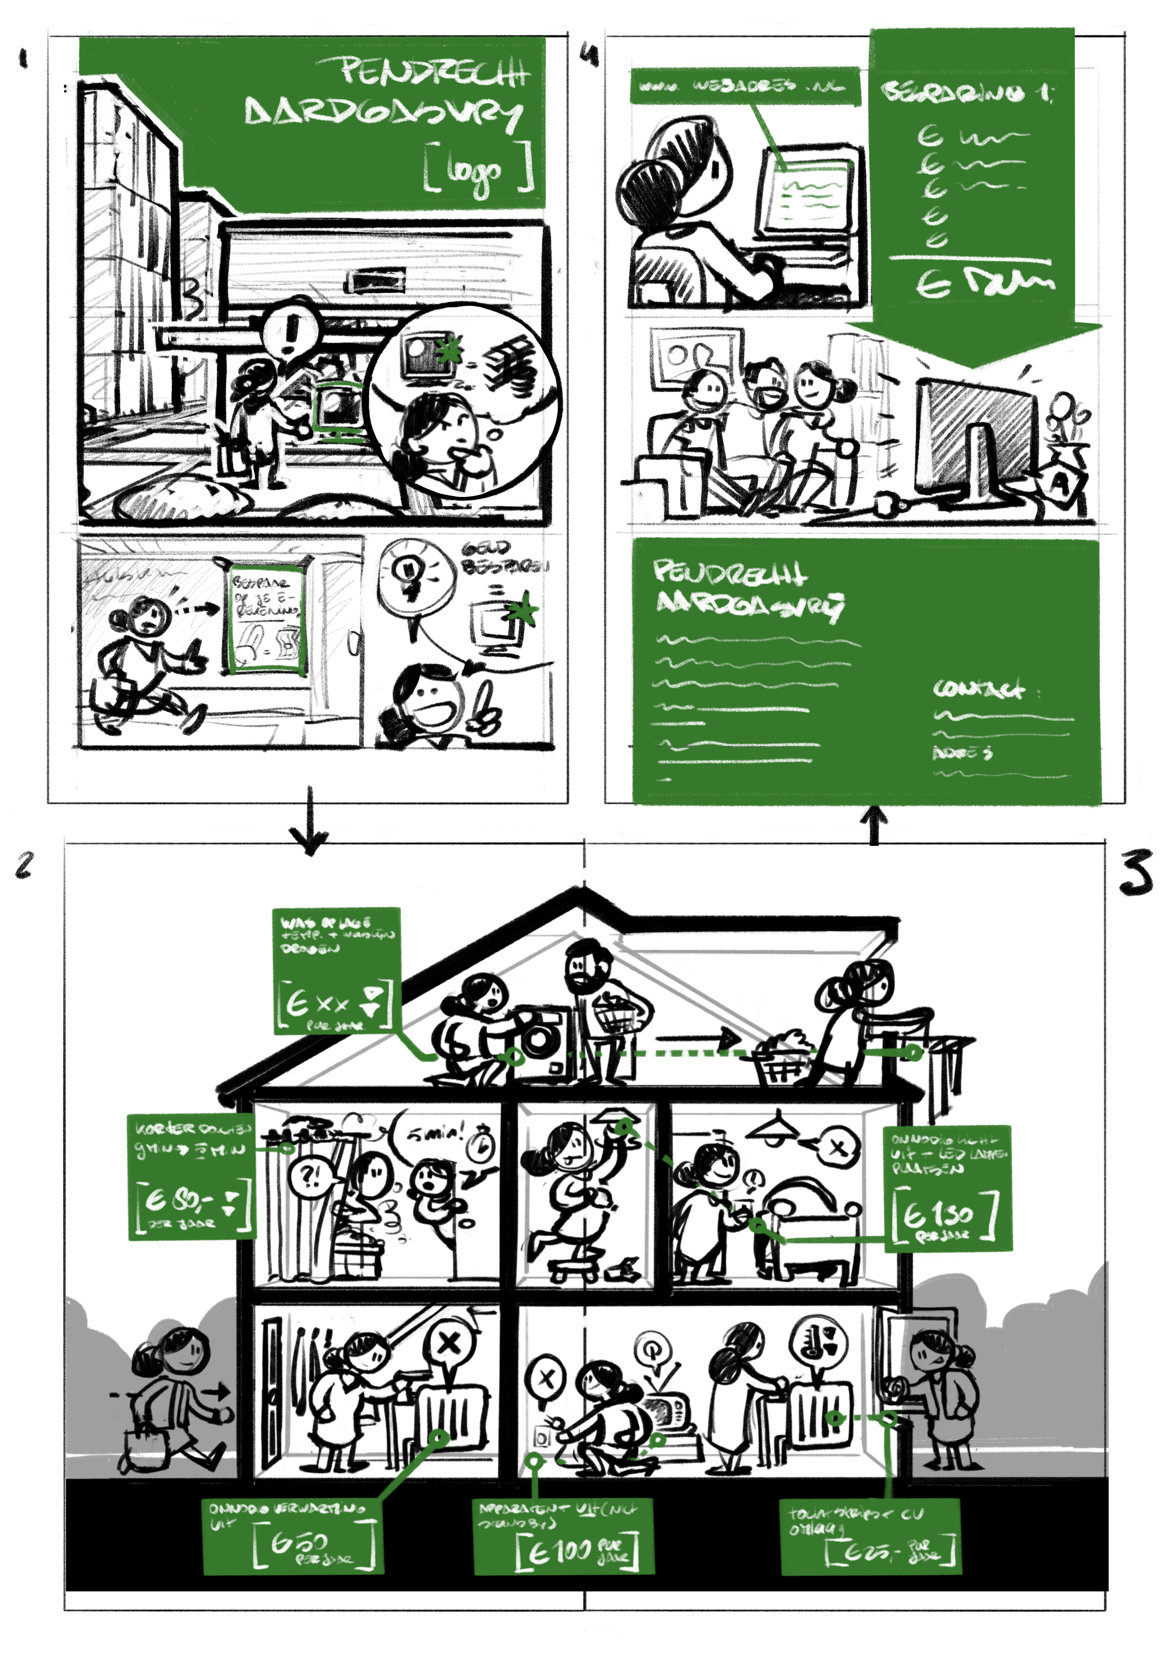 infographic Pendrecht Aardgasvrij energietransitie duurzaamheid schets